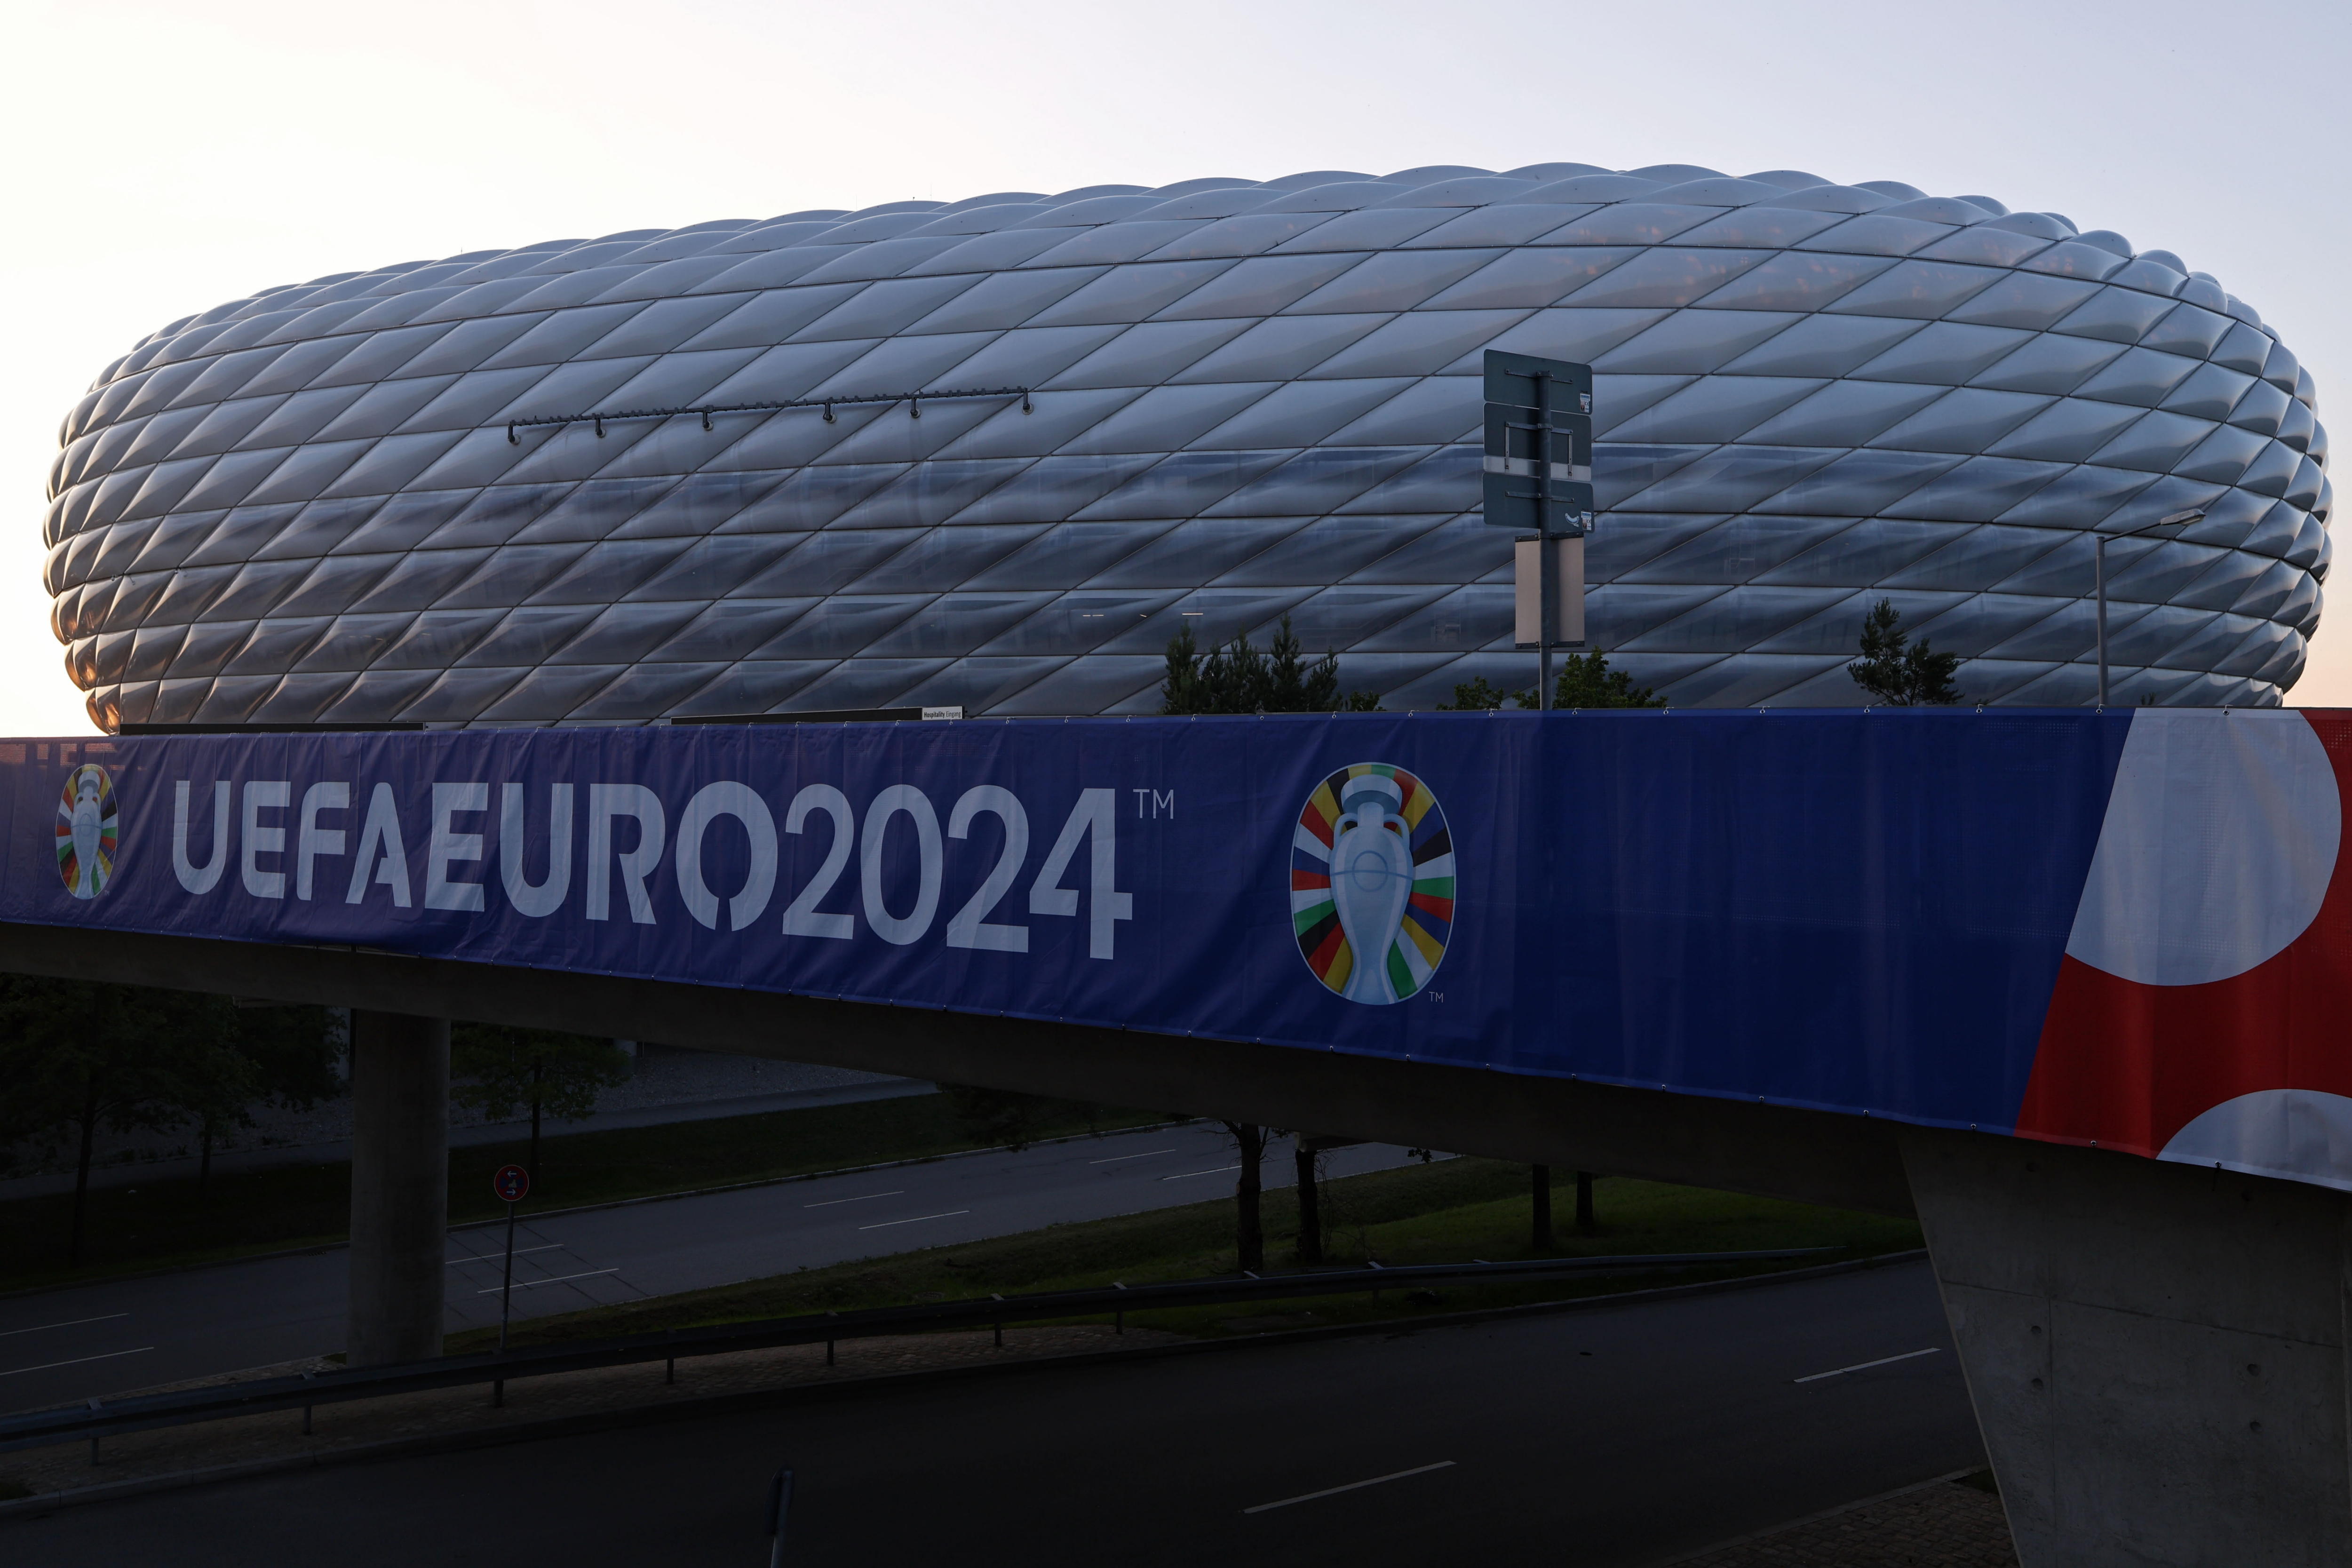 Vista del Allianz Arena, estadio en donde será la inauguración de la Eurocopa 2024.